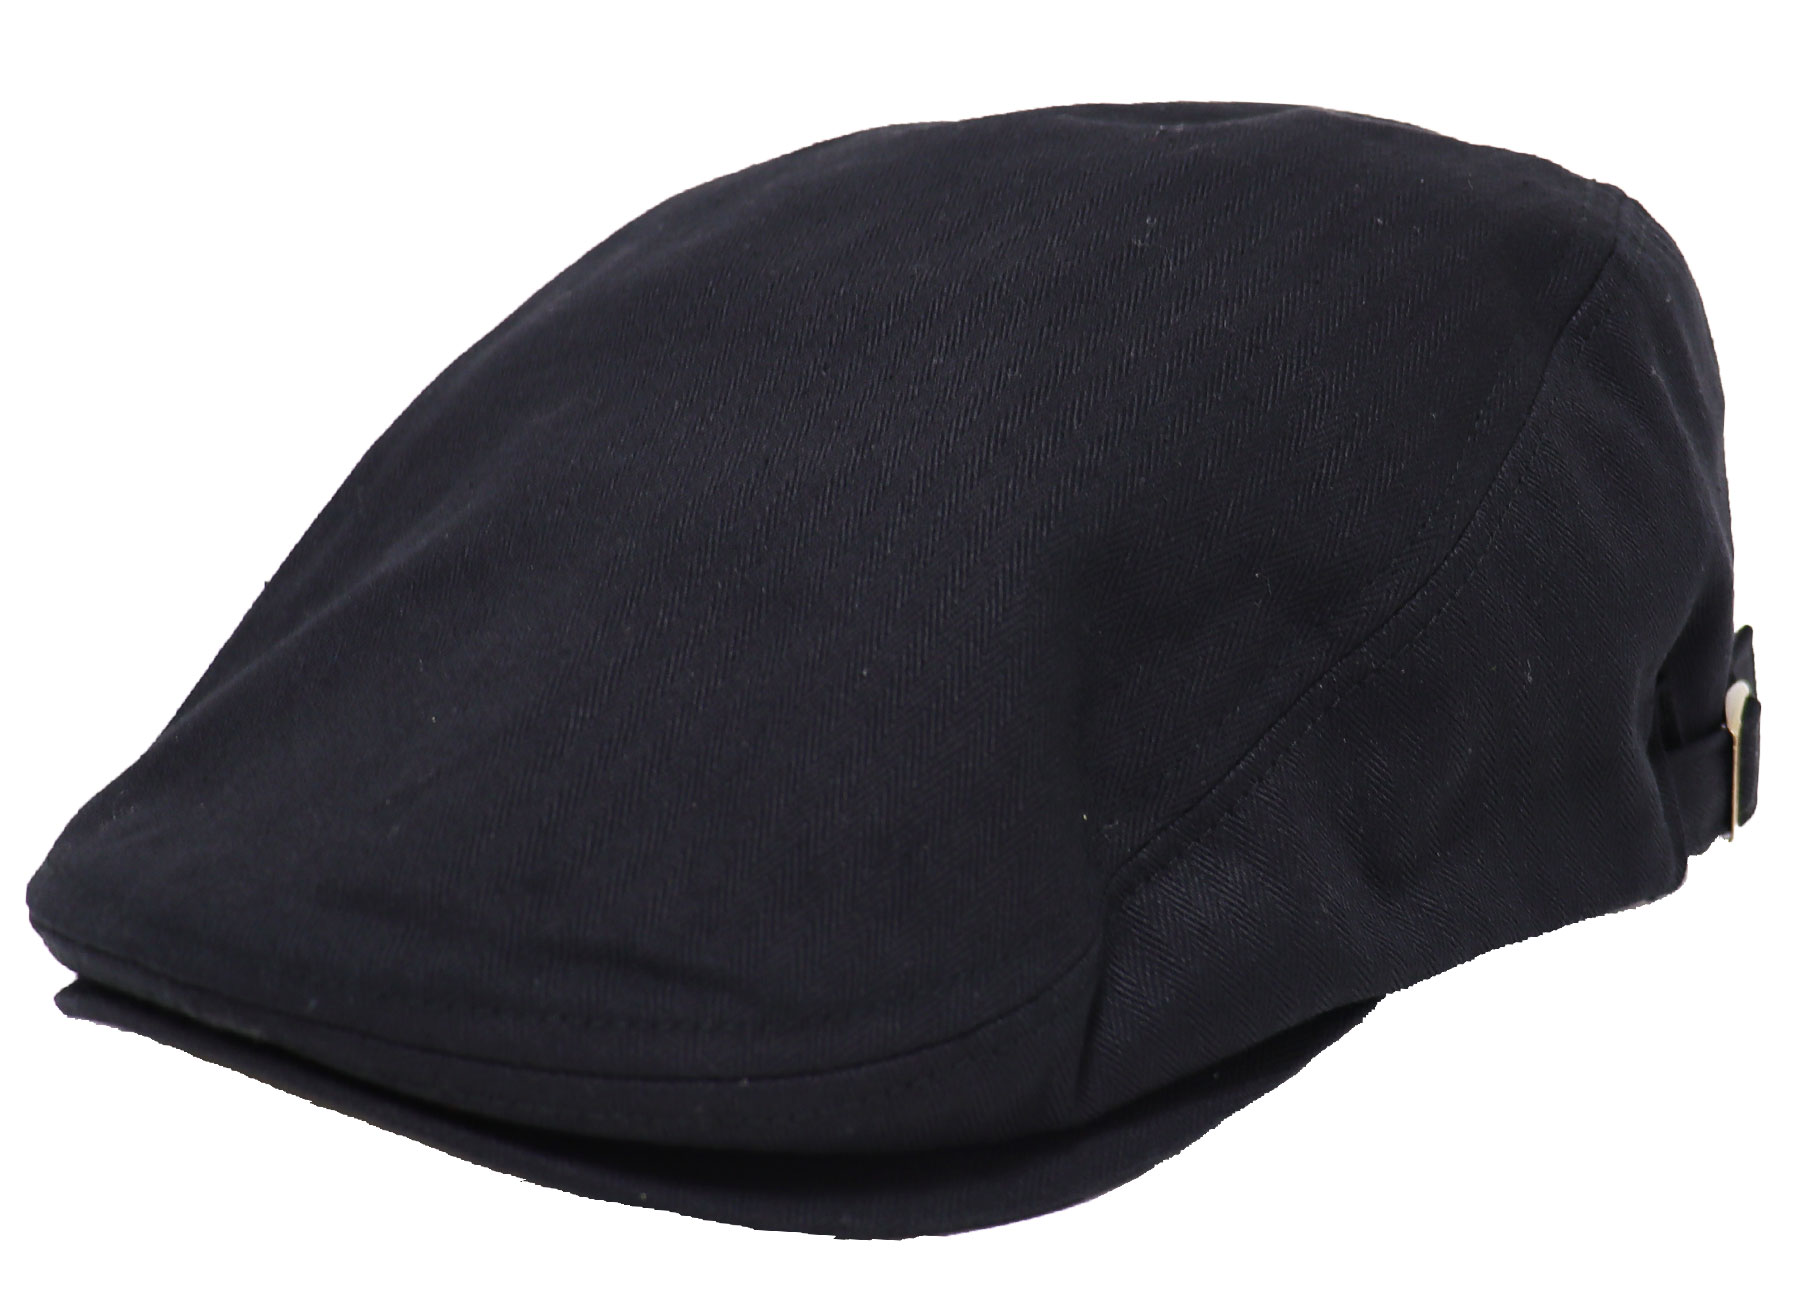 大きいサイズ帽子 65cm対応 LLサイズ ハンチング コットン ヘリンボーン サイドベルト メンズ ブラックEXAS エクサス